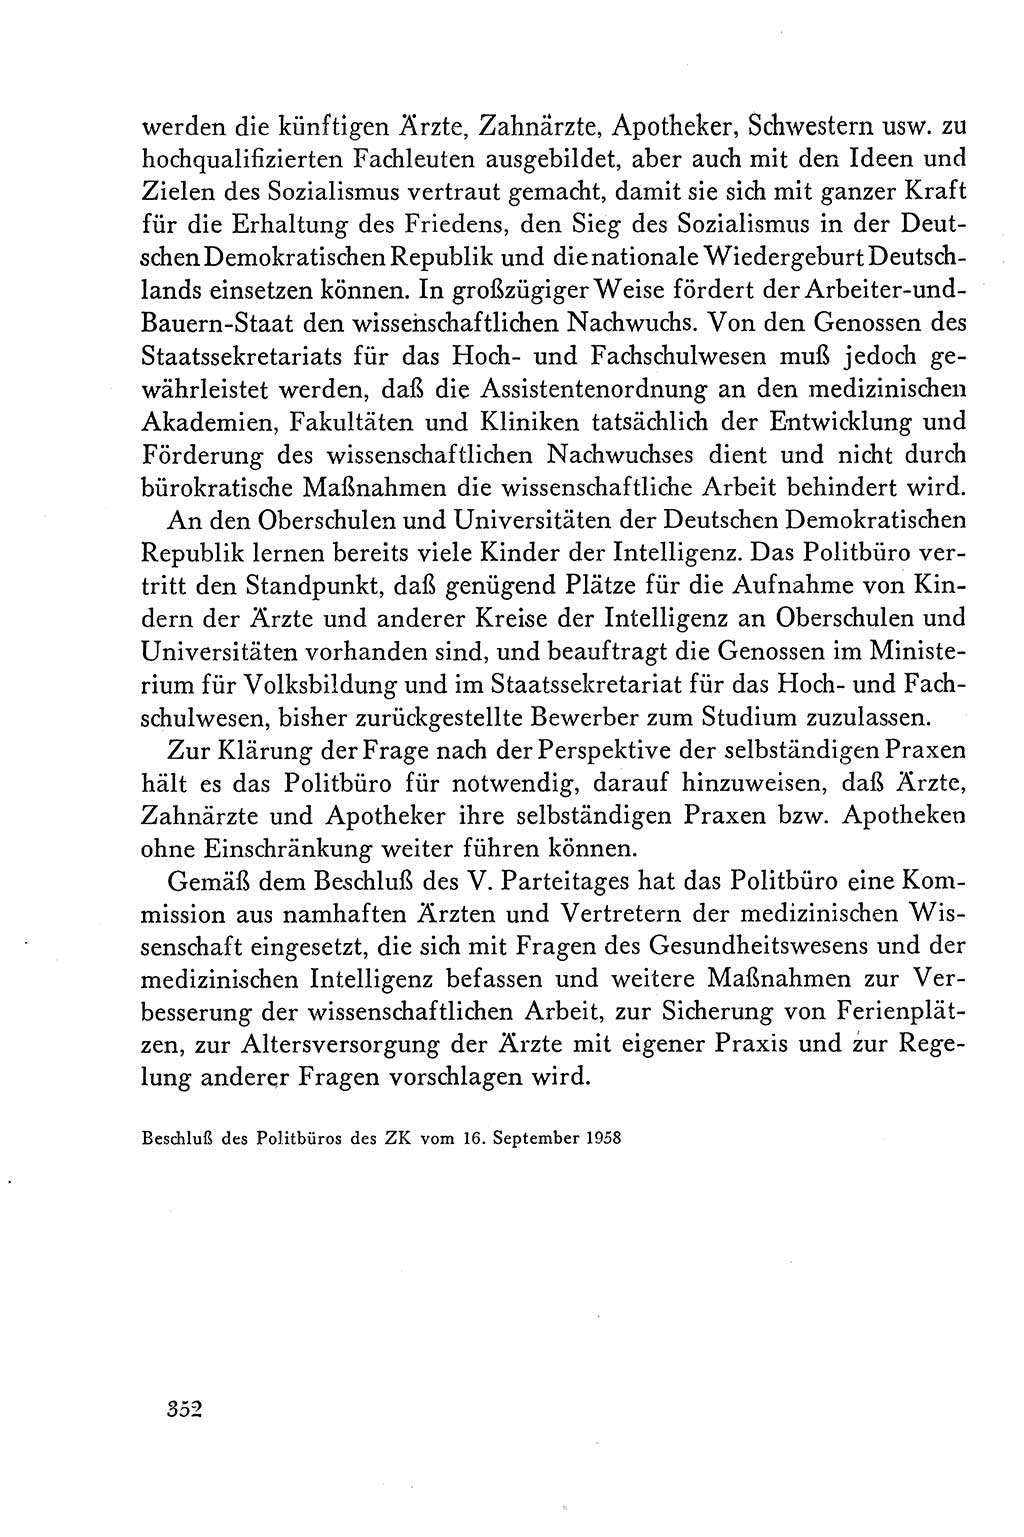 Dokumente der Sozialistischen Einheitspartei Deutschlands (SED) [Deutsche Demokratische Republik (DDR)] 1958-1959, Seite 352 (Dok. SED DDR 1958-1959, S. 352)